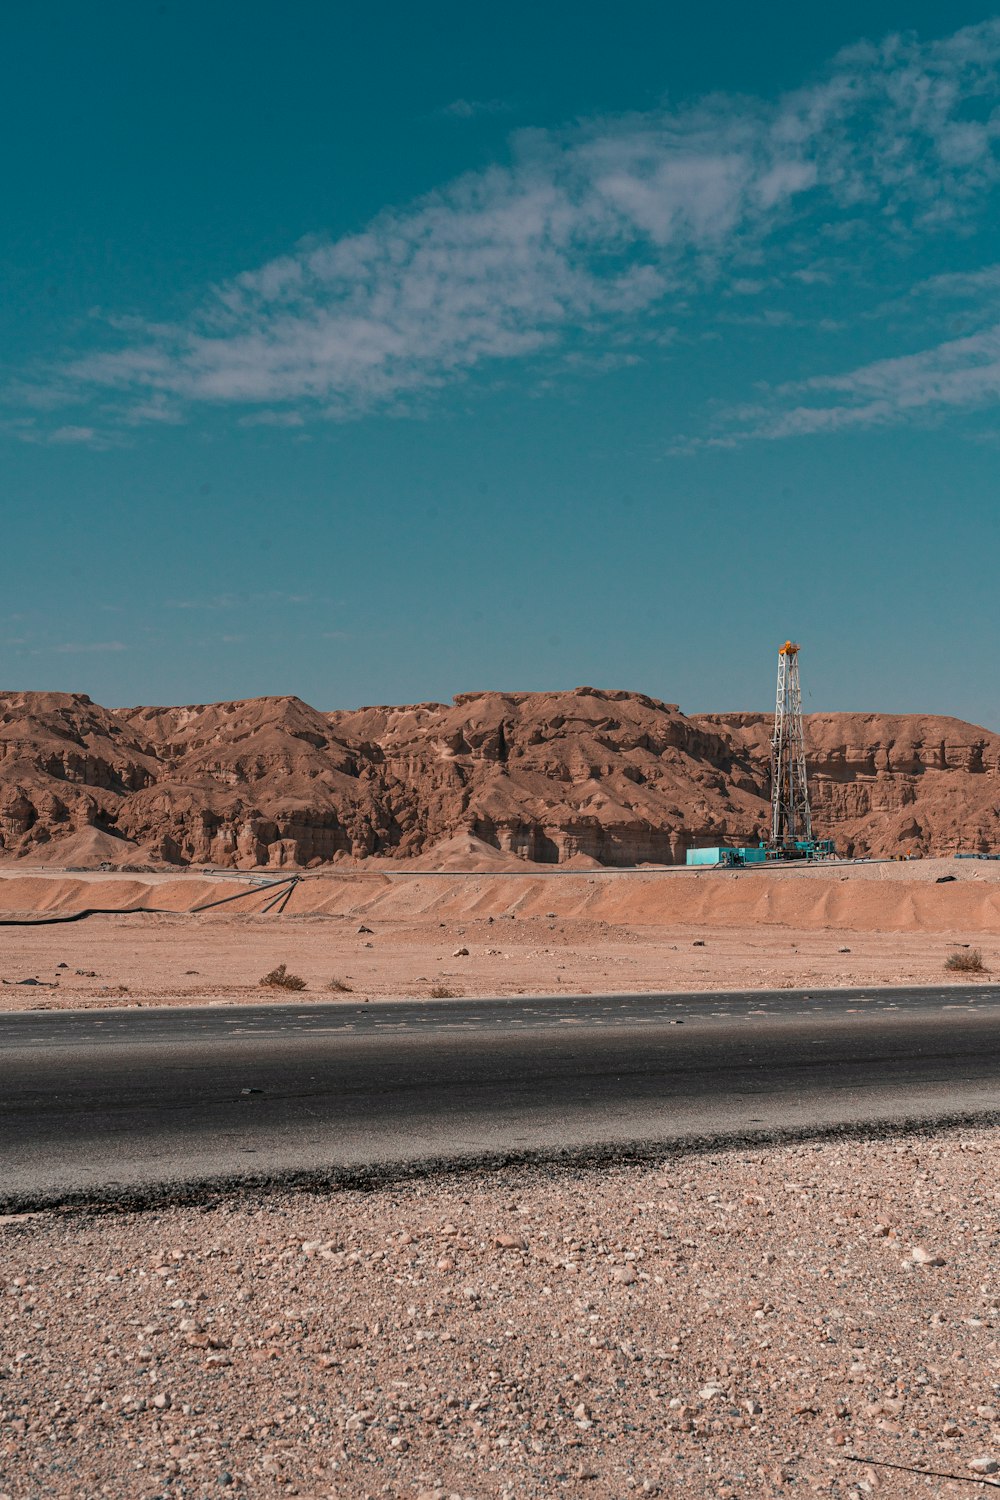 Un camion roulant sur une route au milieu d’un désert